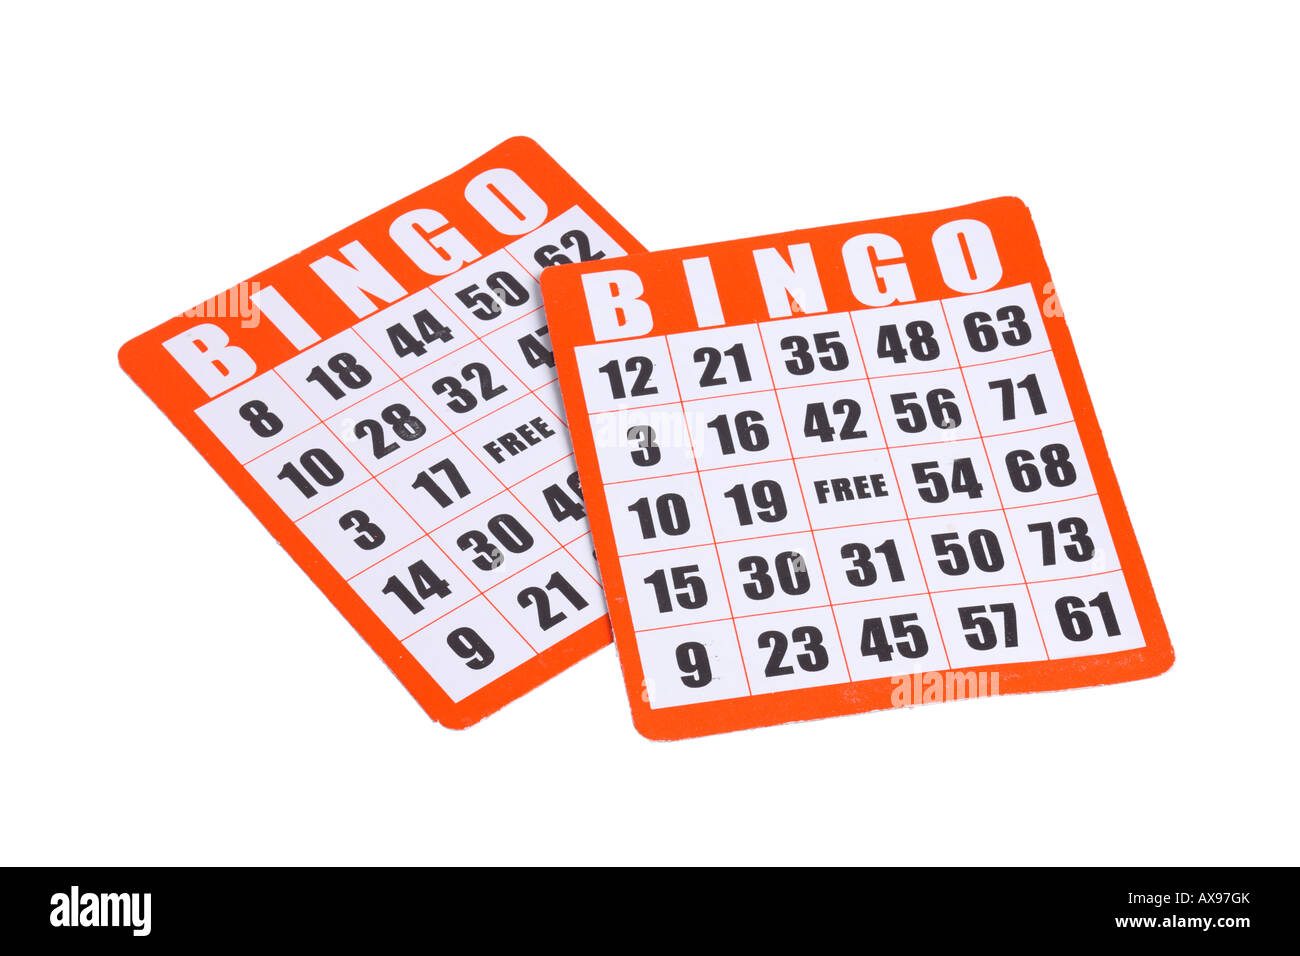 Bingo cards Banque d'images détourées - Alamy